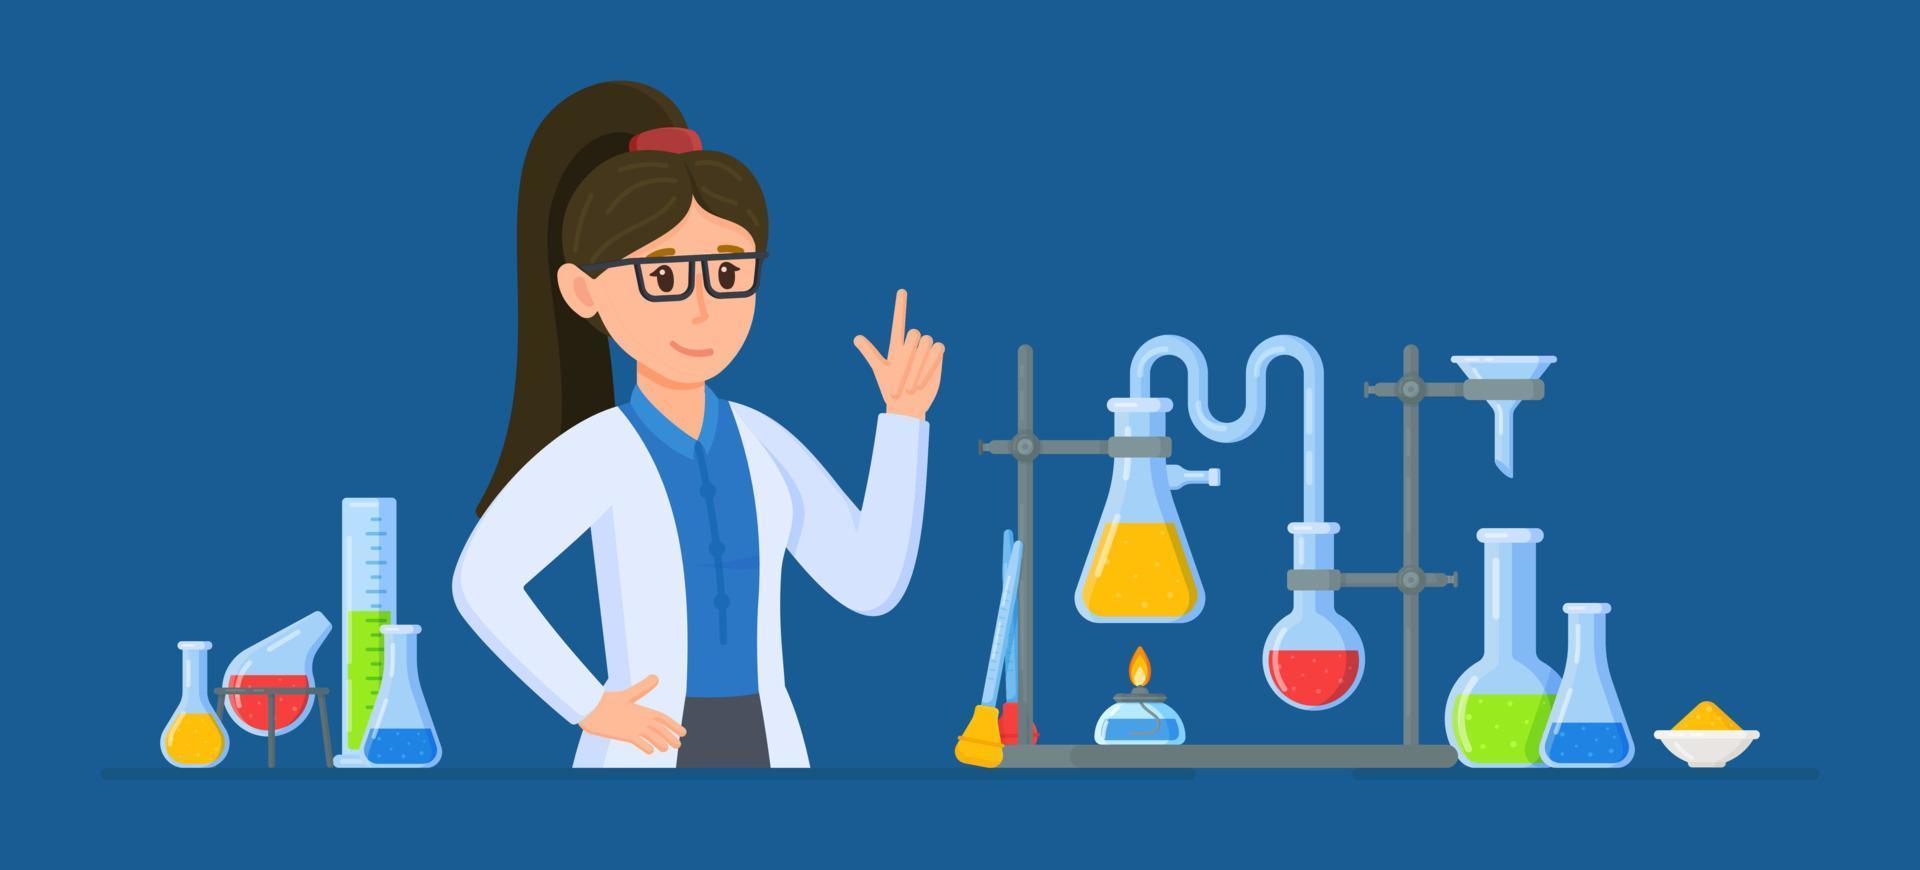 ilustração em vetor de uma cientista feminina. cientista mulher trabalhando em um laboratório.